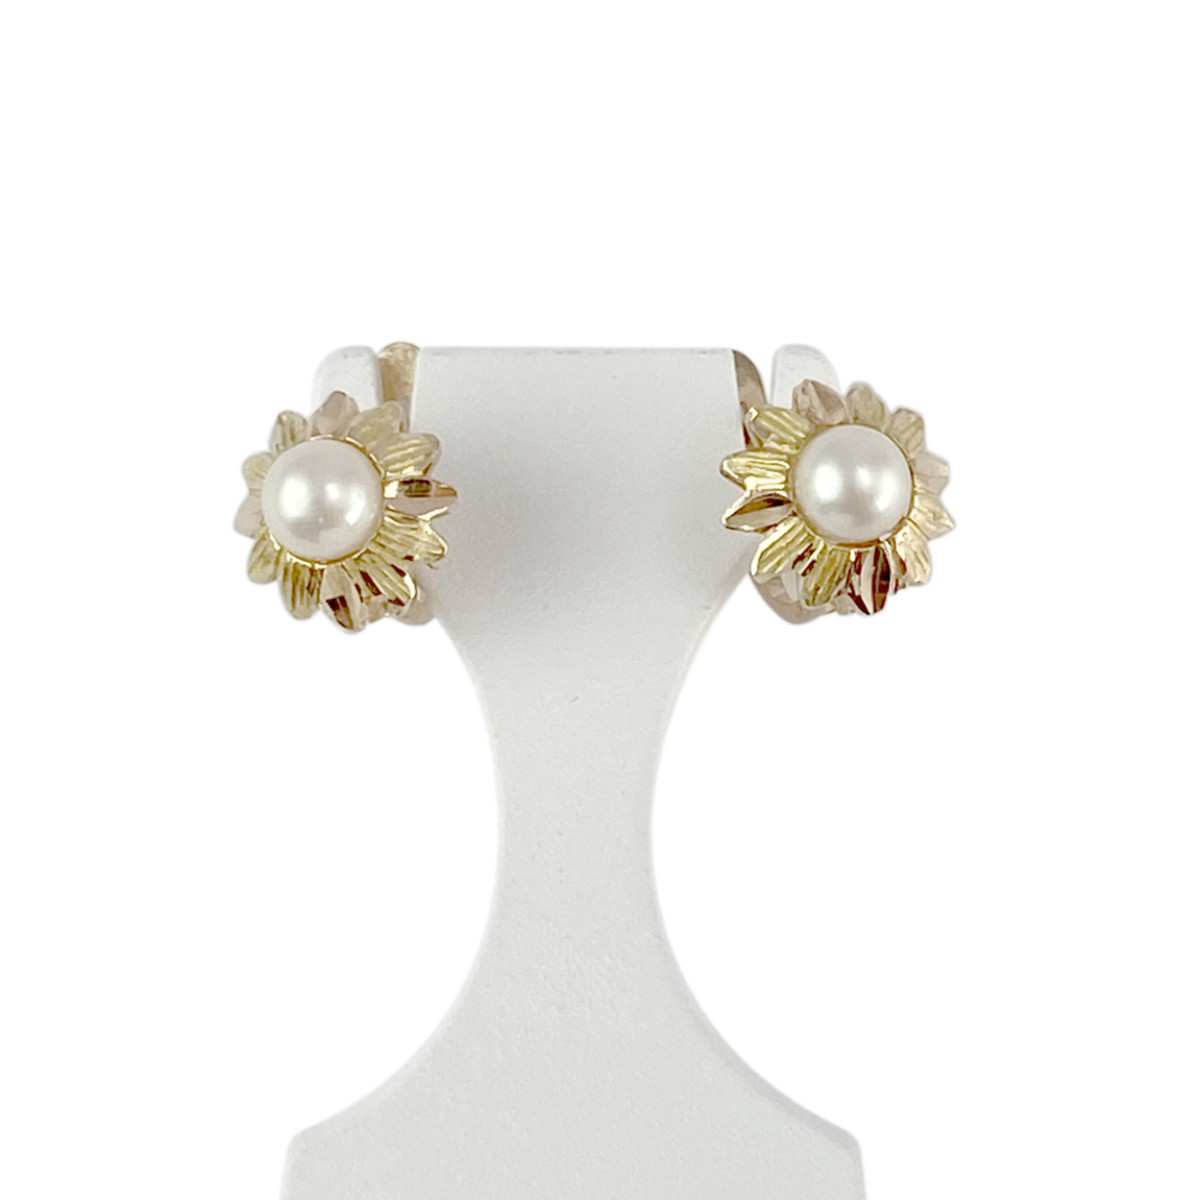 Boucles d'oreilles d'occasion or 750 jaune perles de culture